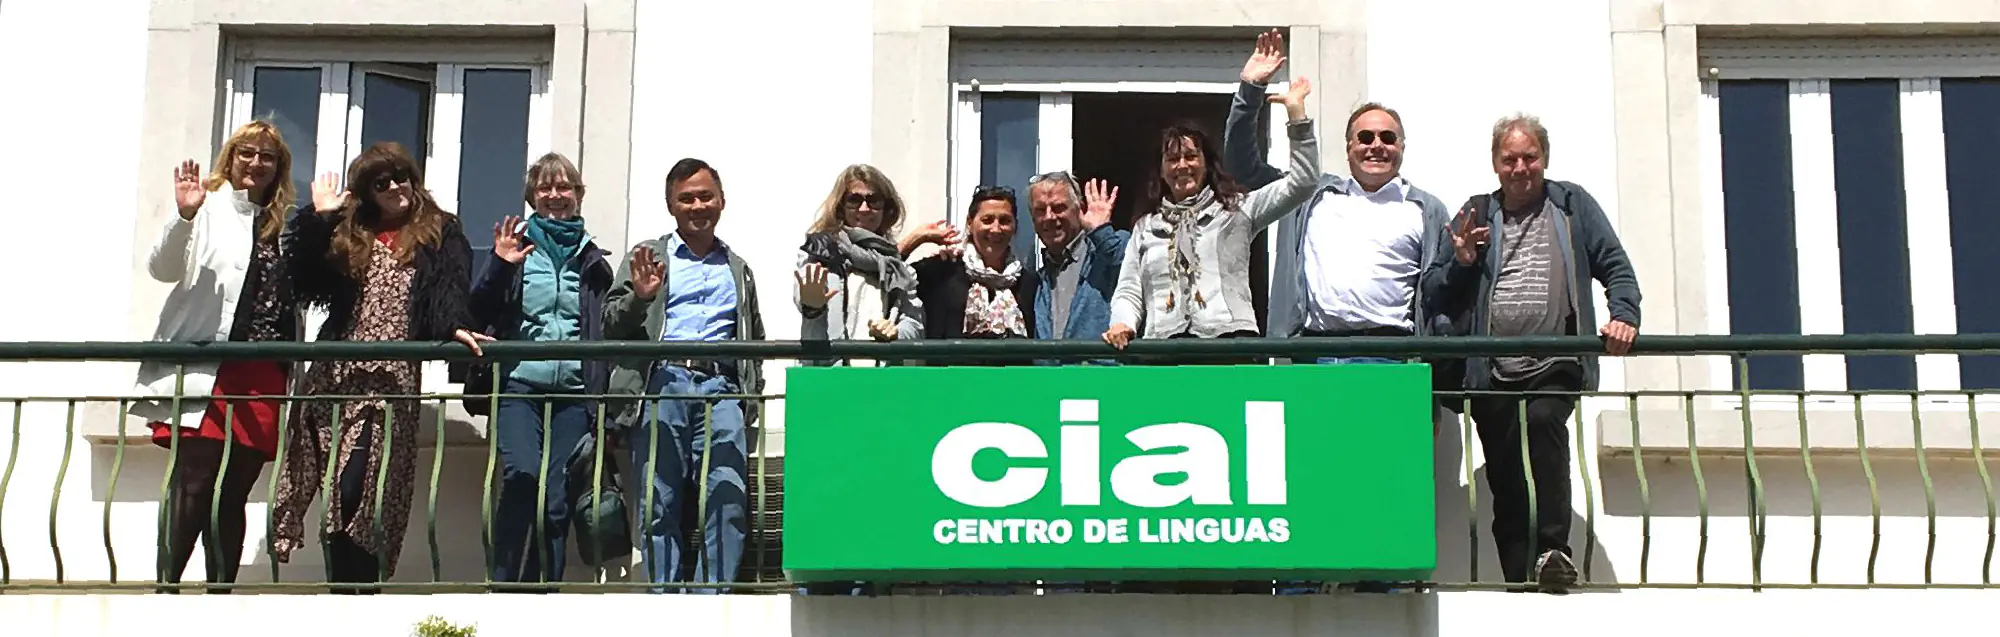 Le sistemazioni offerte da CIAL Faro